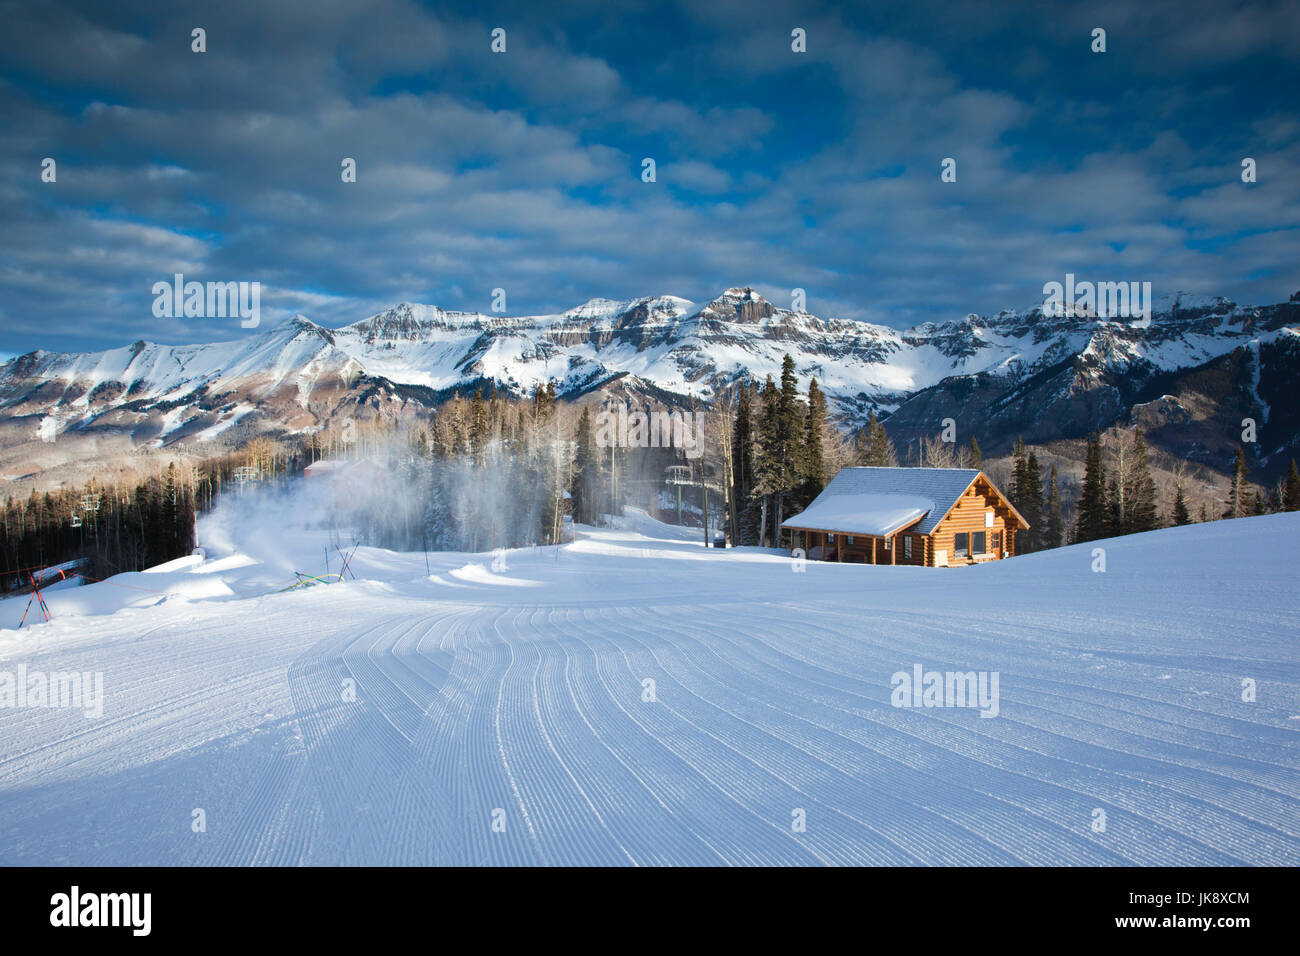 USA, Colorado, Telluride, Mountain Village Ski Area, morning Stock Photo